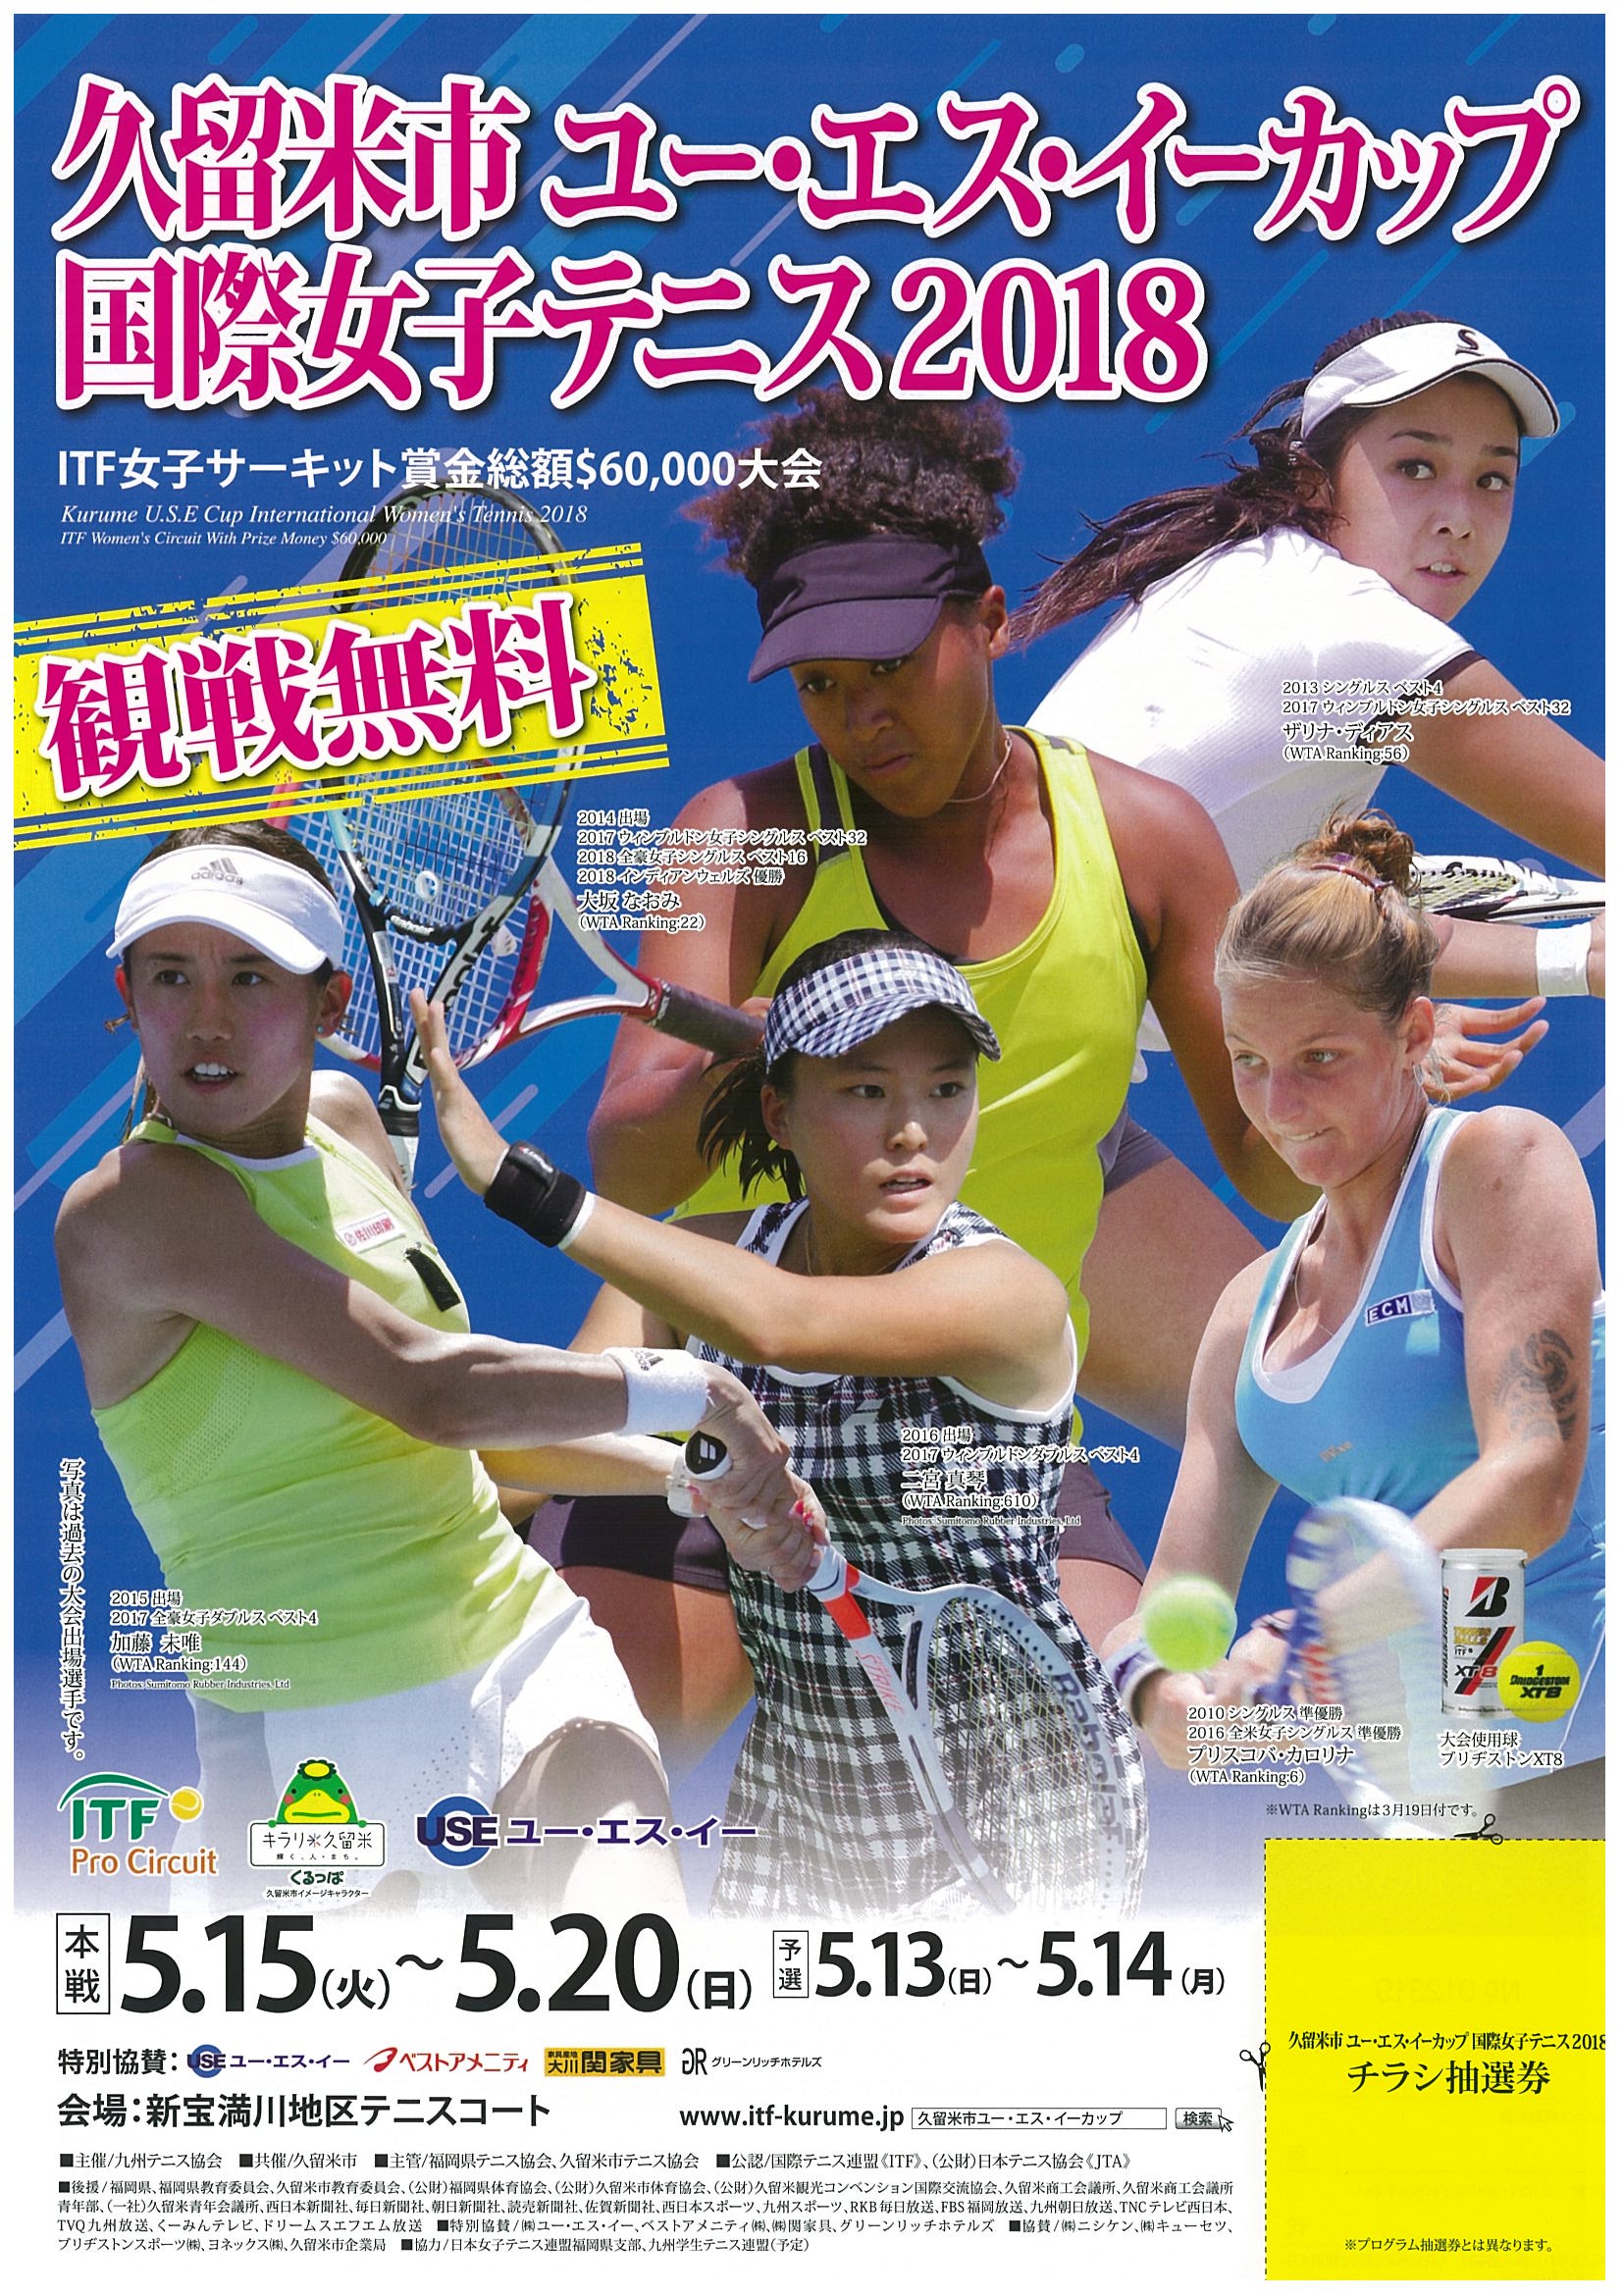 「久留米市ユー・エス・イーカップ国際女子テニス」が5月13日に開幕します